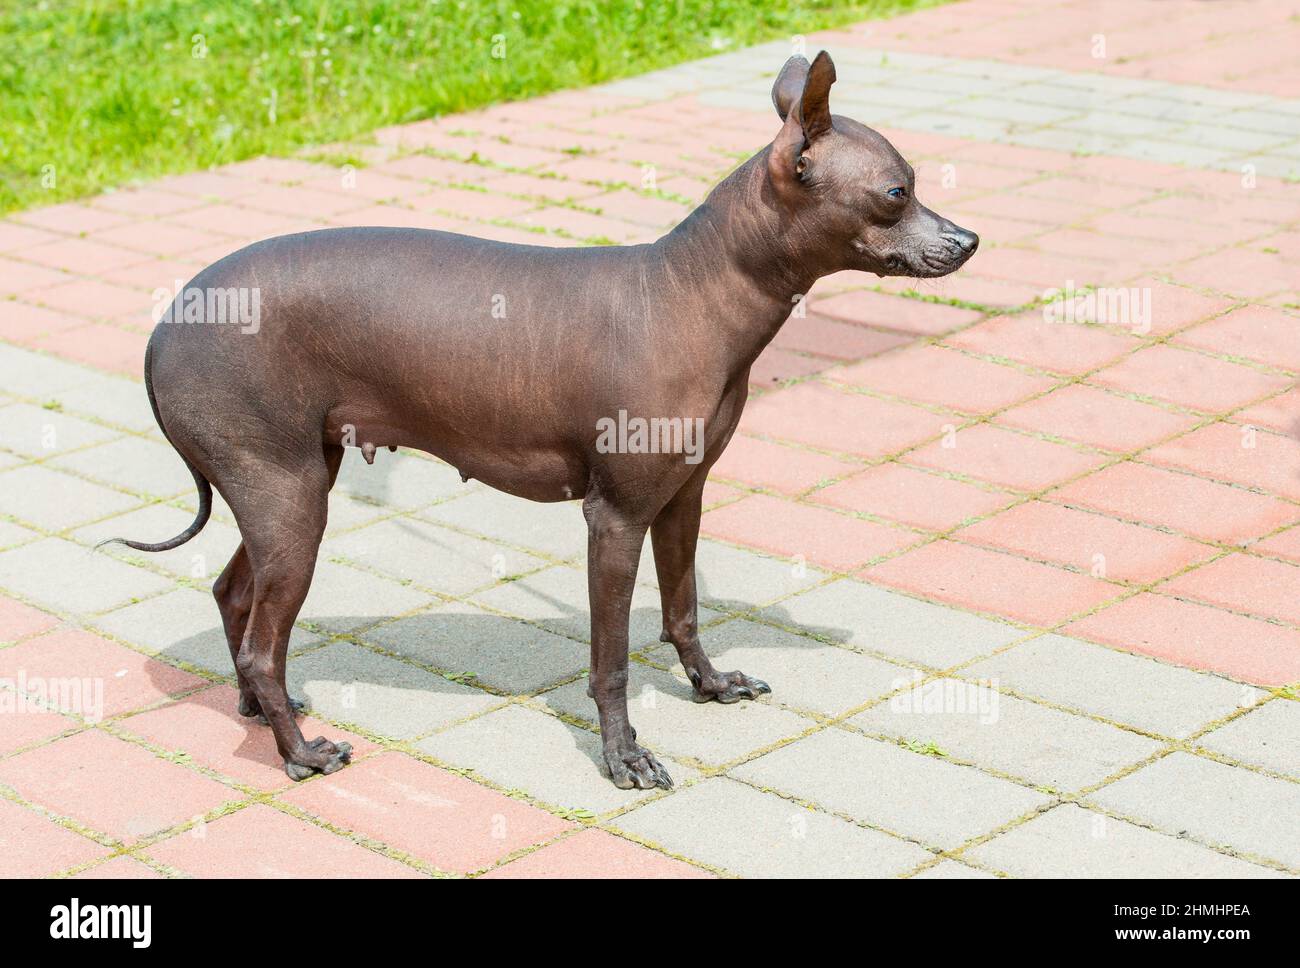 Xoloitzcuintli cane senza capelli. Il cane senza capelli Xoloitzcuintli si trova nel parco. Foto Stock